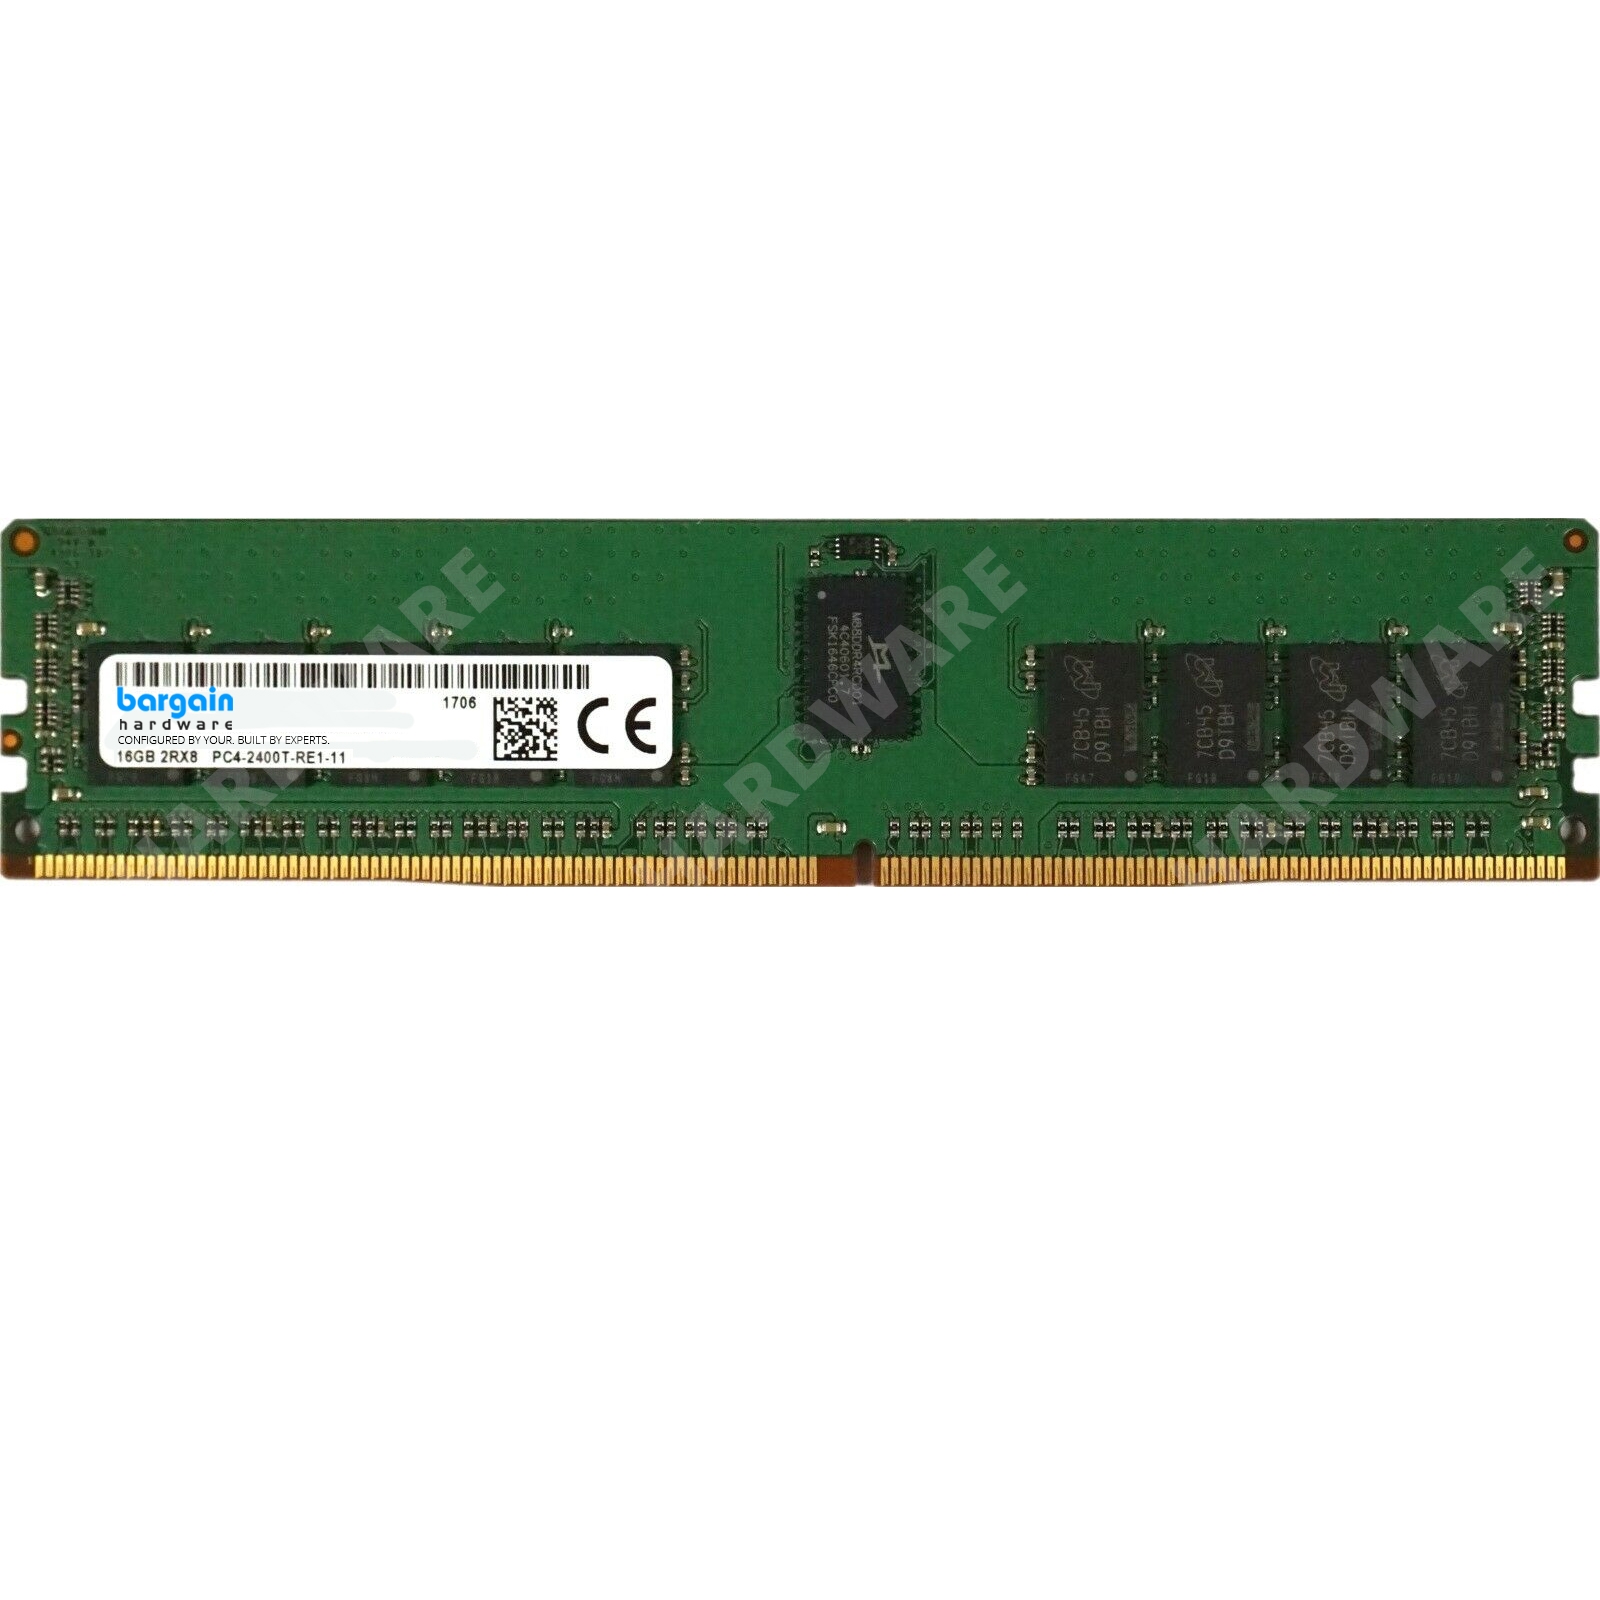 HP Z440 Z640 Z840 Workstation 128GB-384GB - ECC REG 16GB PC4-2400T DDR4  DIMMS